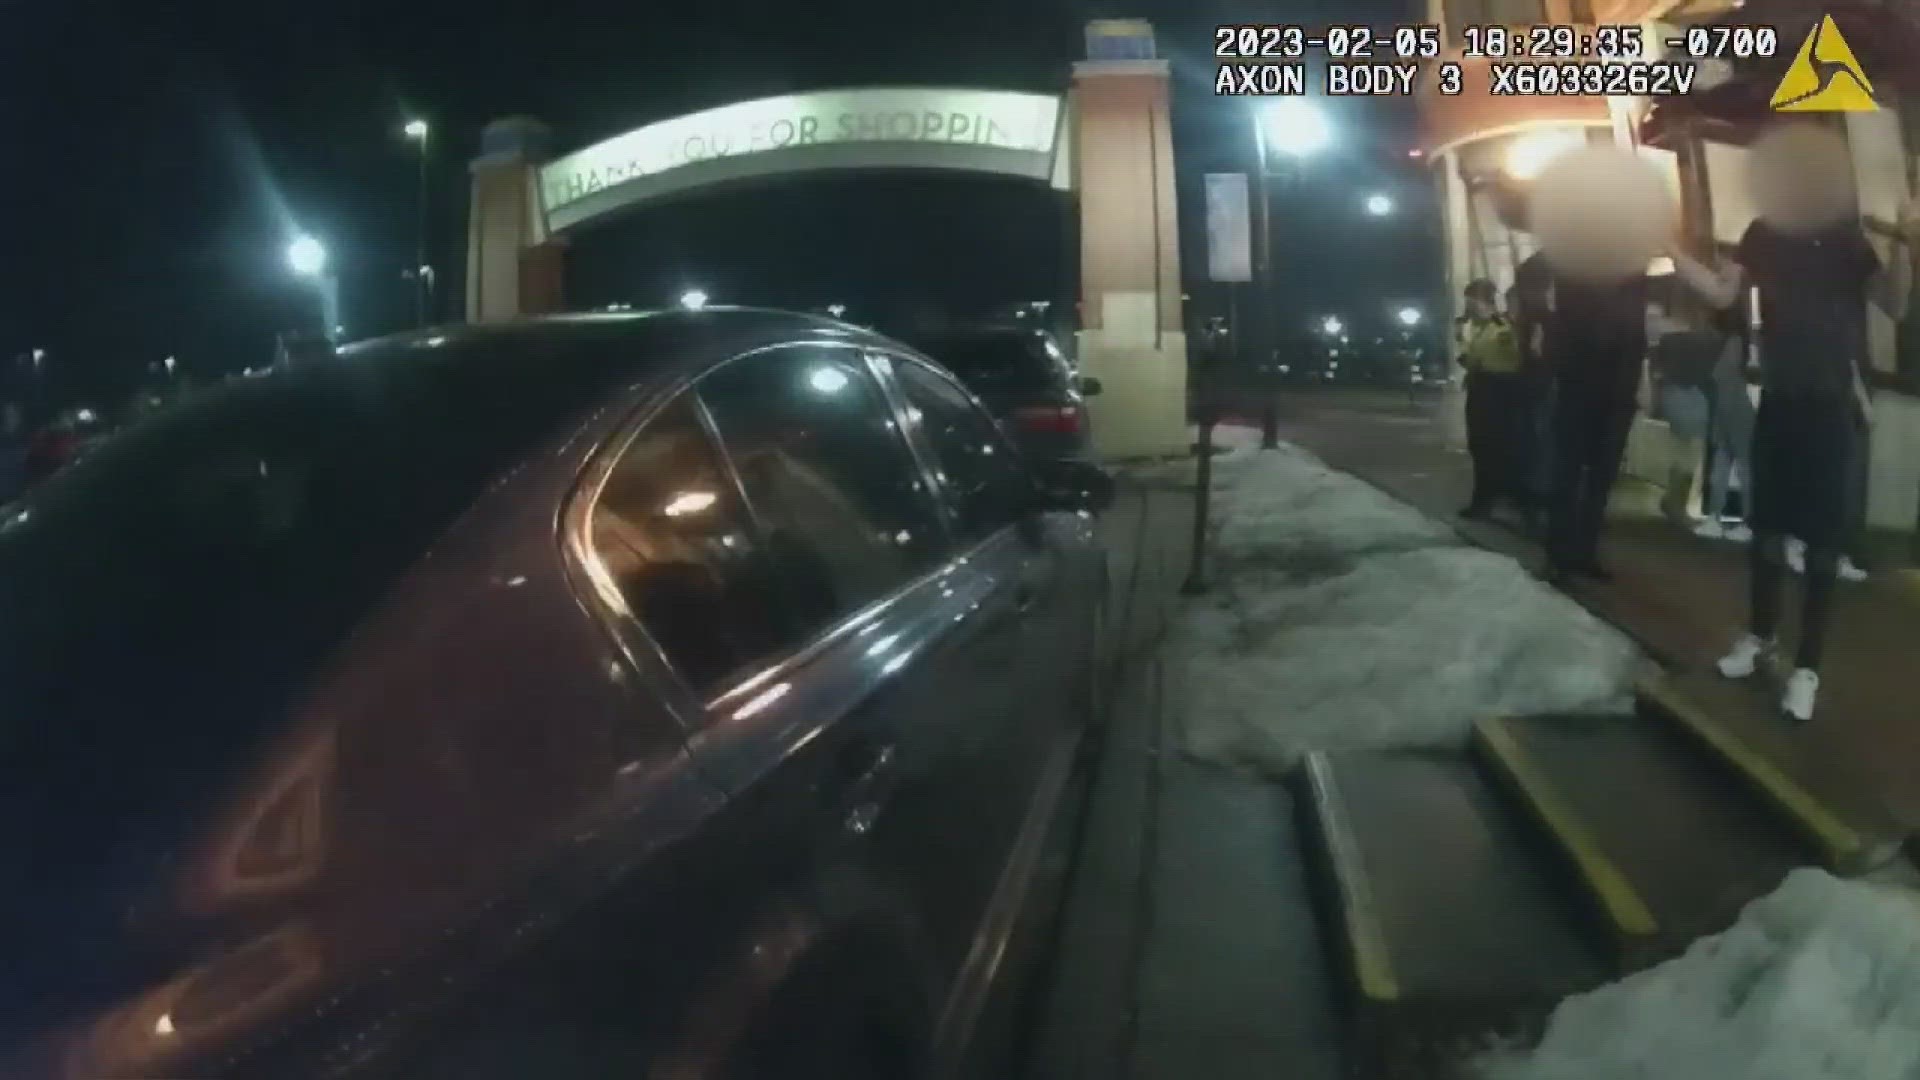 Body cam video sheds light on deadly confrontation 9news.com